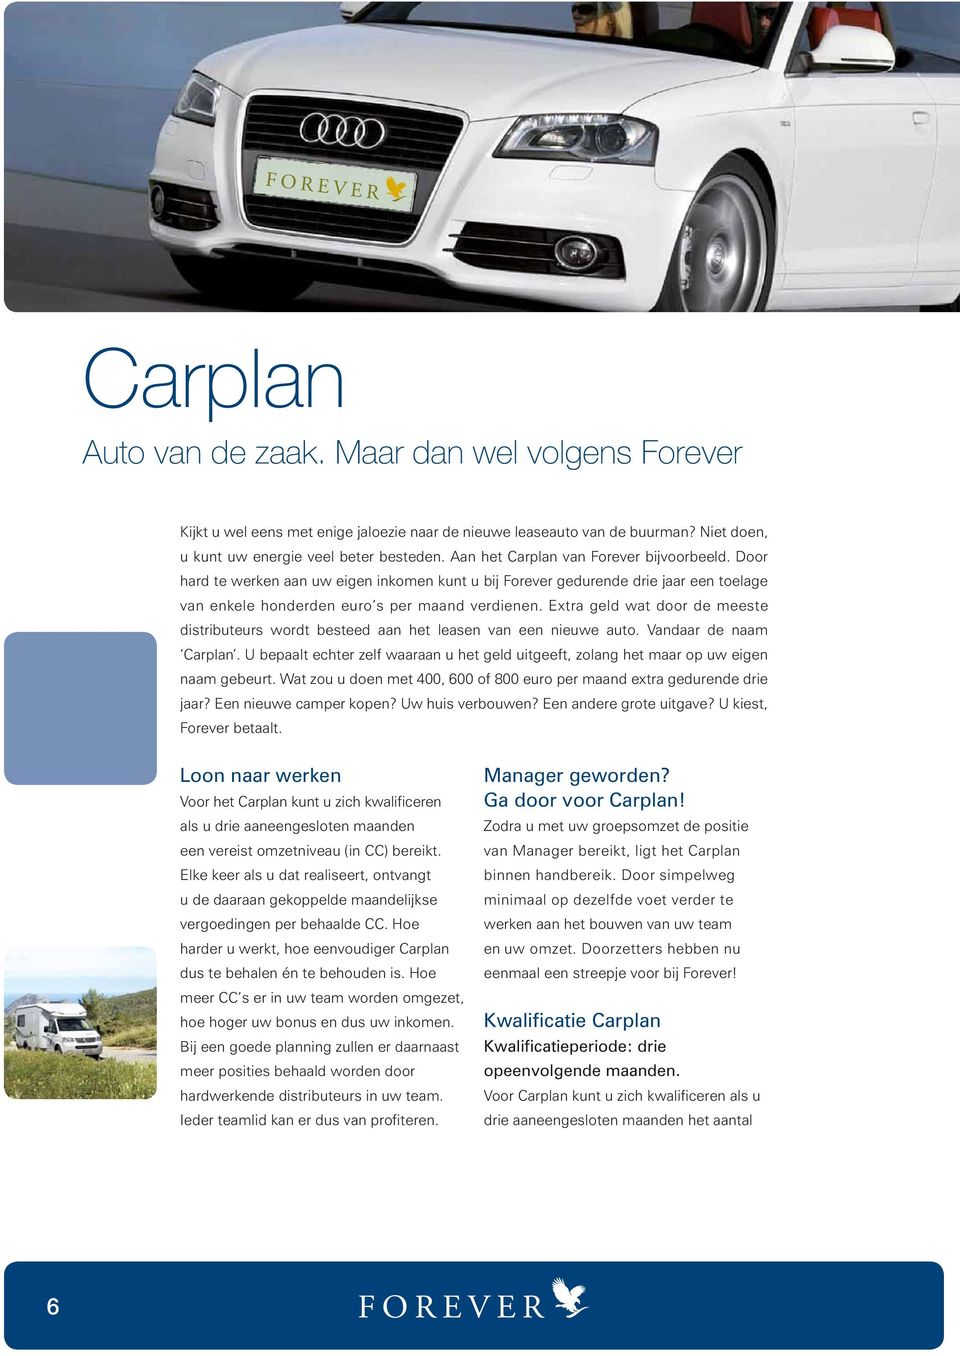 Extra geld wat door de meeste distributeurs wordt besteed aan het leasen van een nieuwe auto. Vandaar de naam Carplan.